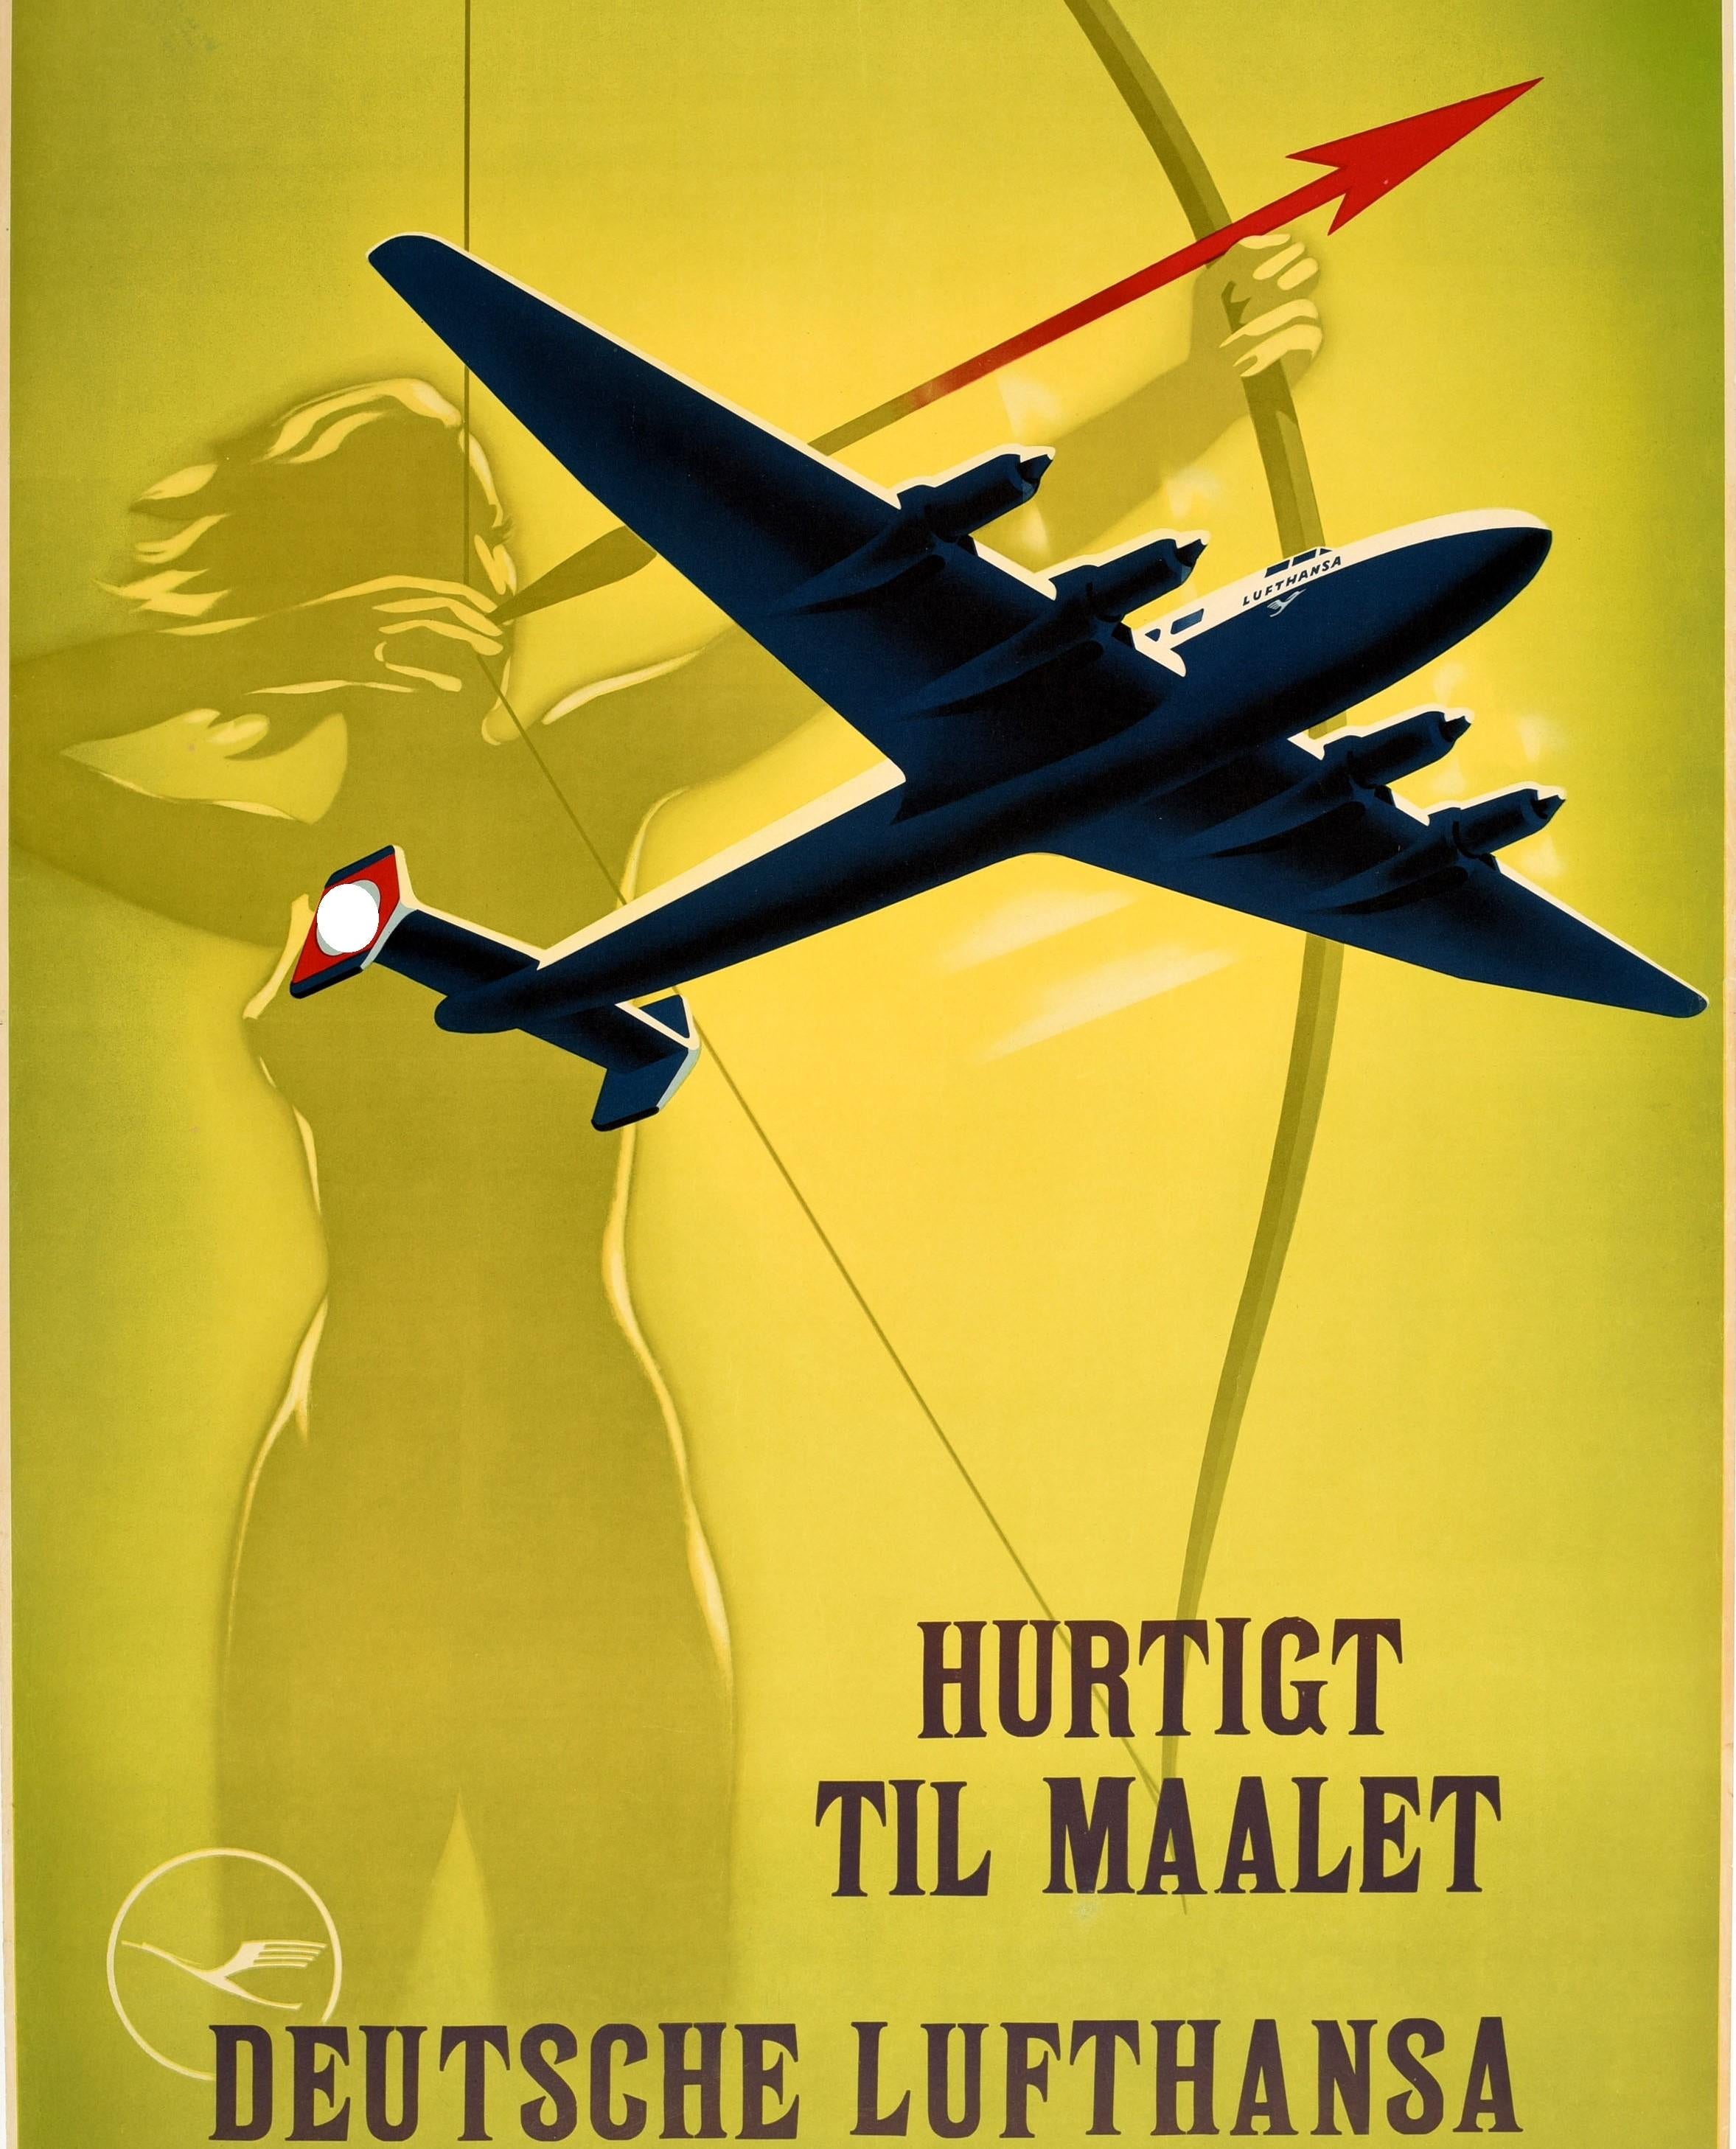 Original Vintage-Reiseplakat Deutsche Lufthansa Fast To The Goal, Pfeil-Design (Art déco), Print, von Willy Hanke